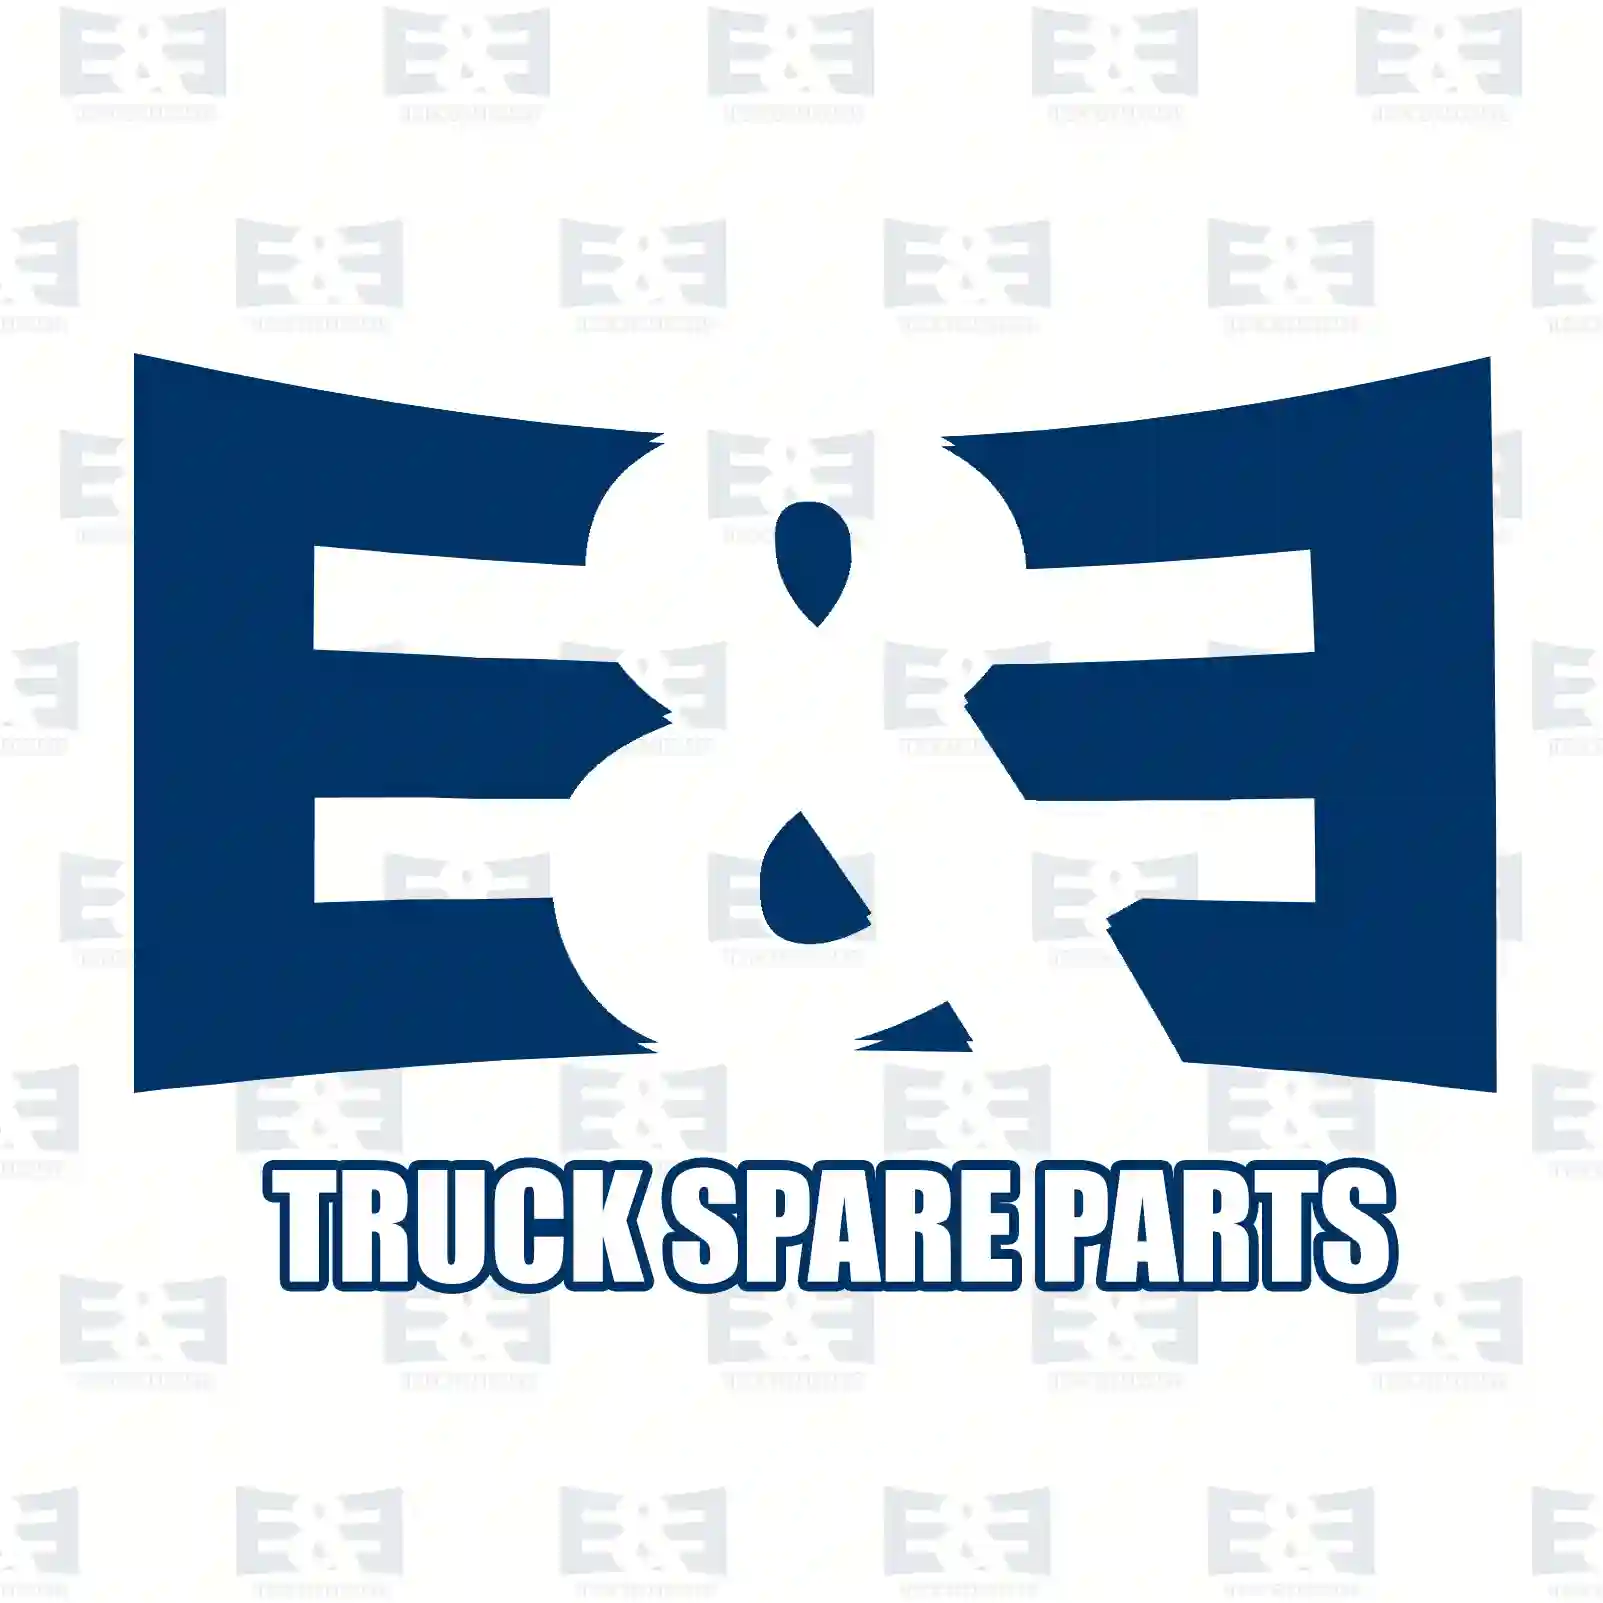 Brake cylinder, 2E2293951, 98474559, 81511016283, 81511019283, ||  2E2293951 E&E Truck Spare Parts | Truck Spare Parts, Auotomotive Spare Parts Brake cylinder, 2E2293951, 98474559, 81511016283, 81511019283, ||  2E2293951 E&E Truck Spare Parts | Truck Spare Parts, Auotomotive Spare Parts